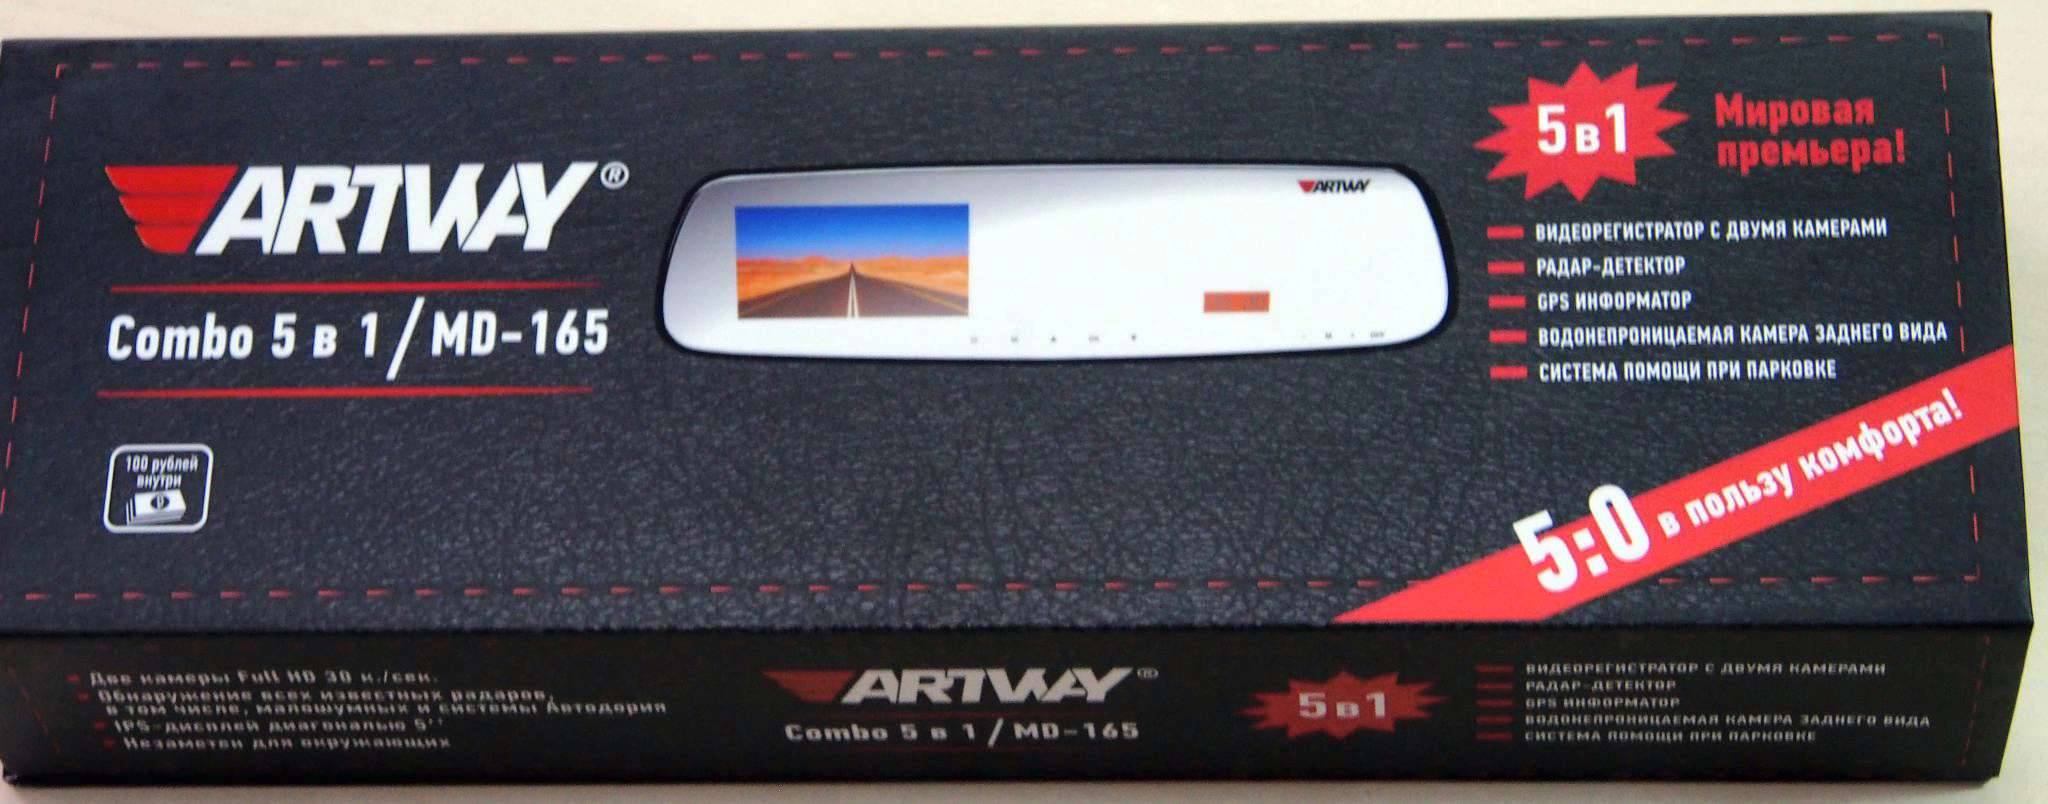 Отзывы на artway md-105 от владельцев видеорегистратора с радар-детектором